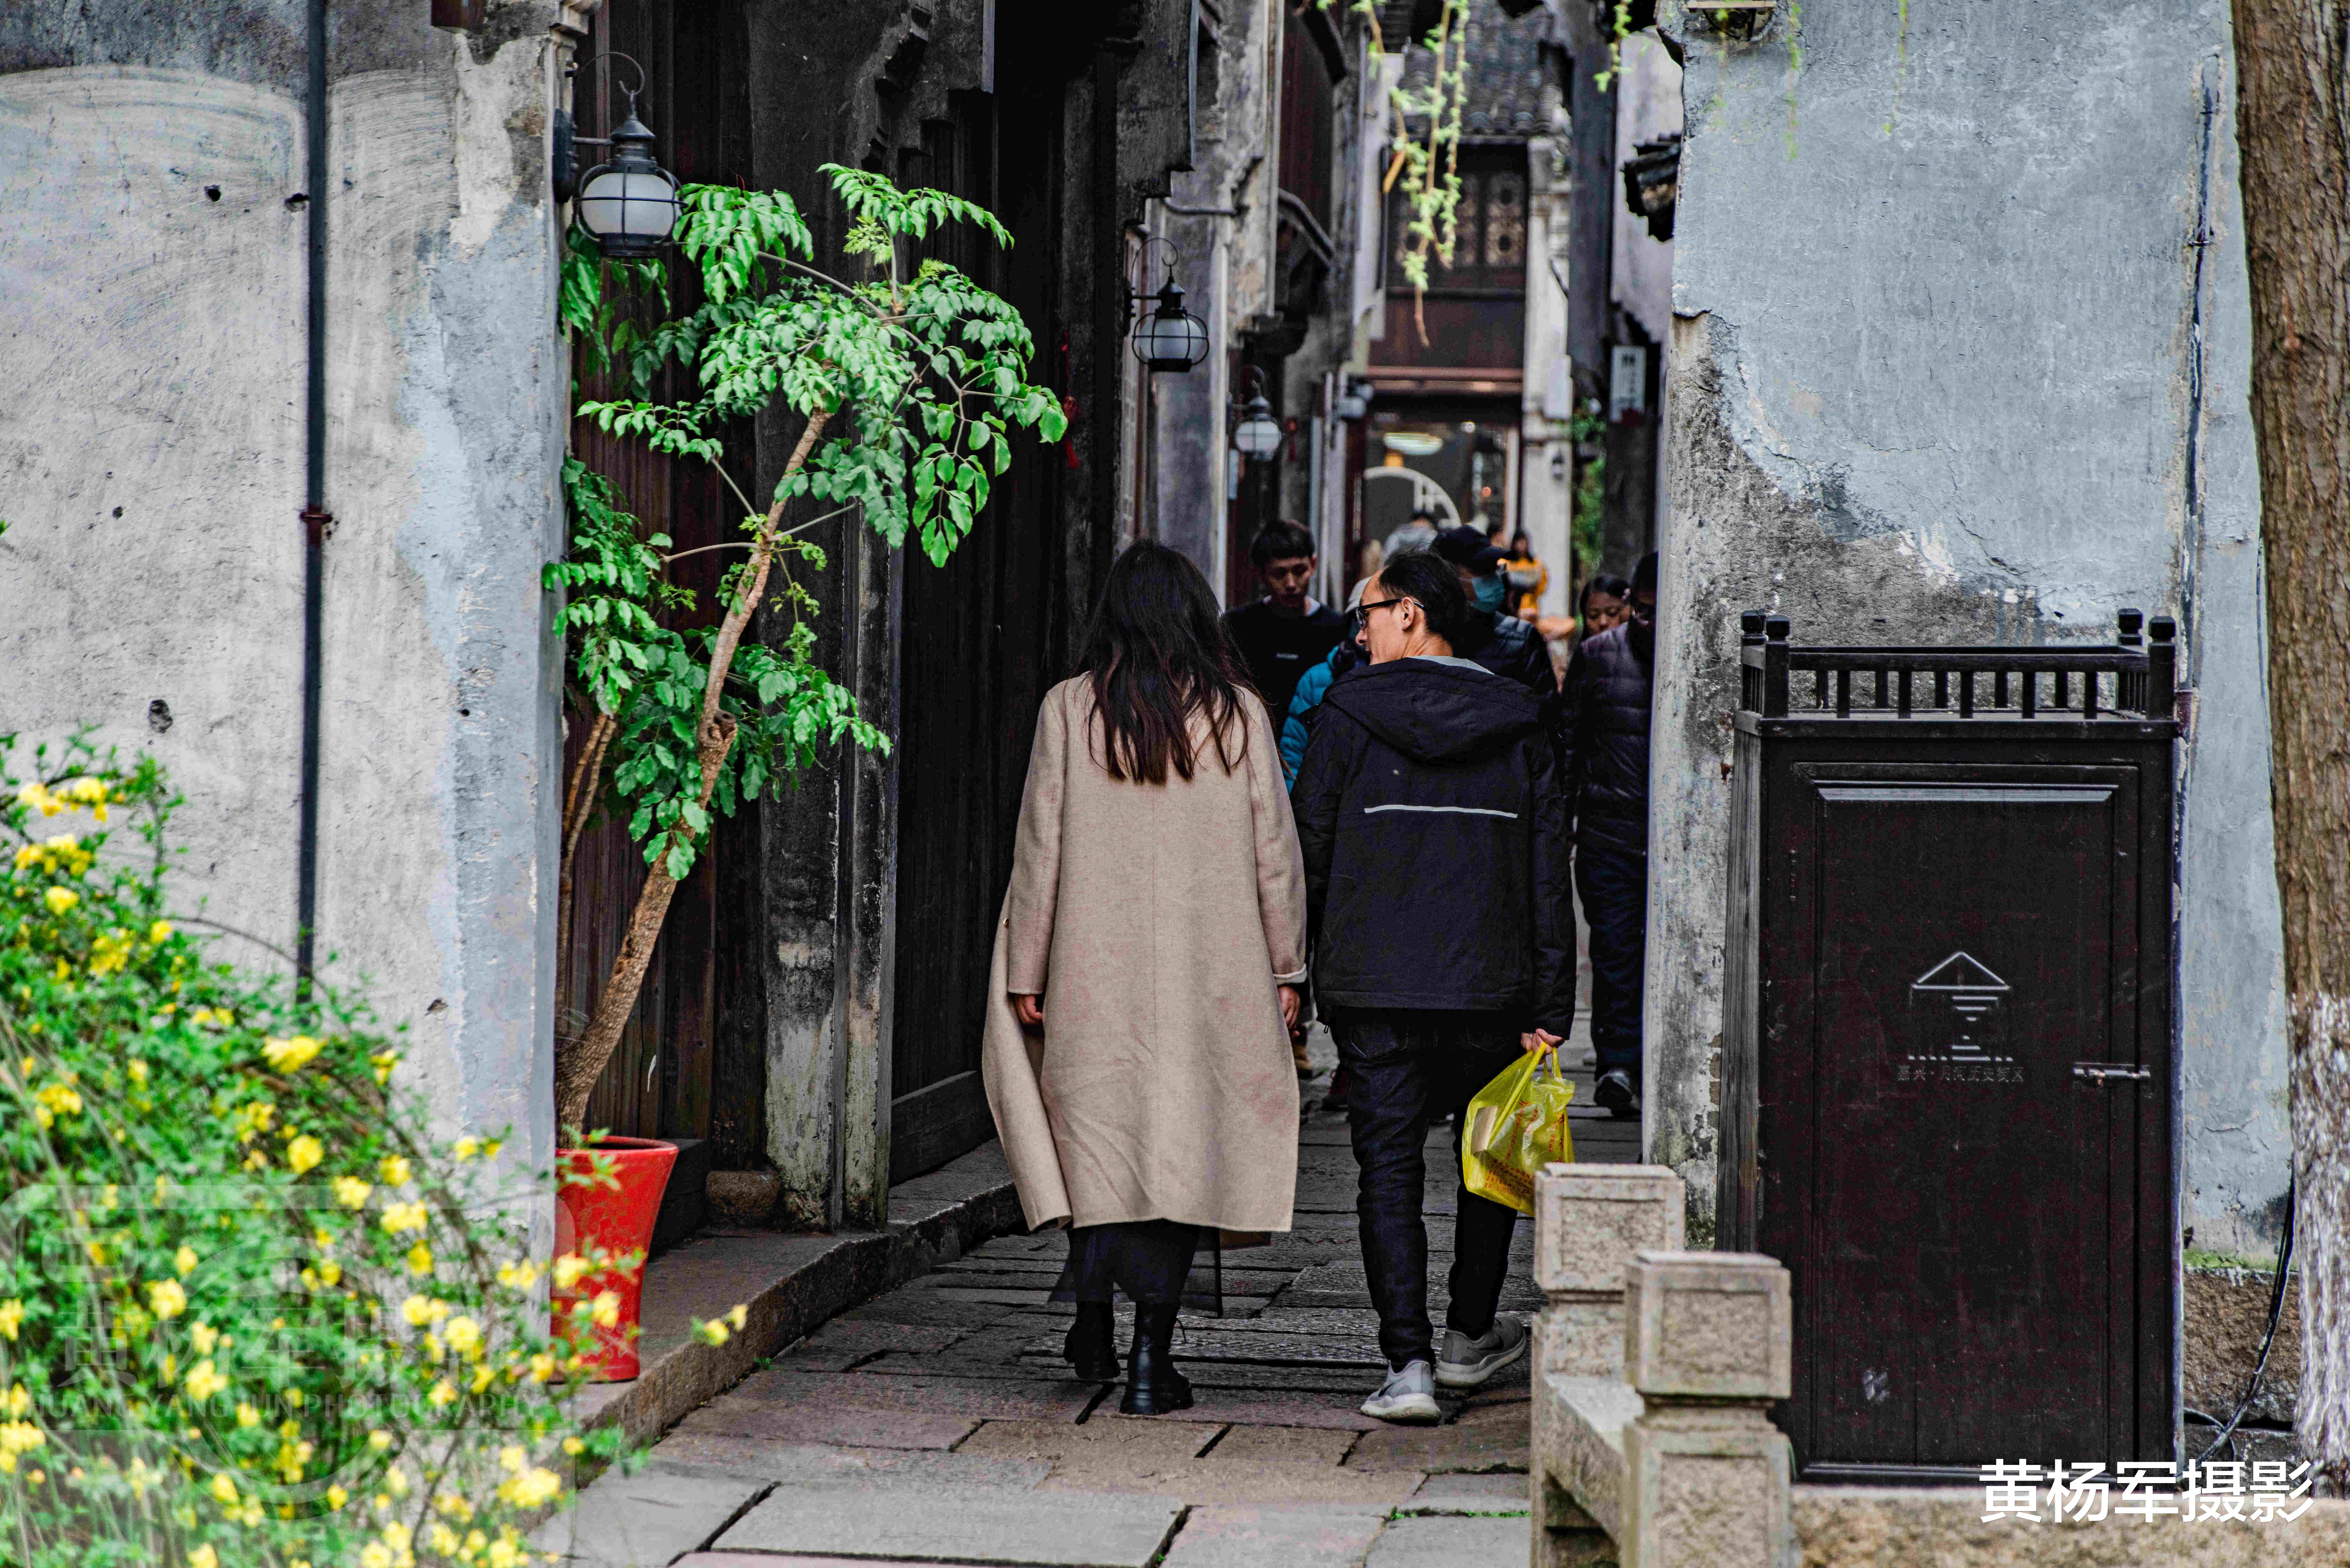 嘉兴|中国最适合旅居的城市，距今已1700年建城史，水乡泽国春色美如画